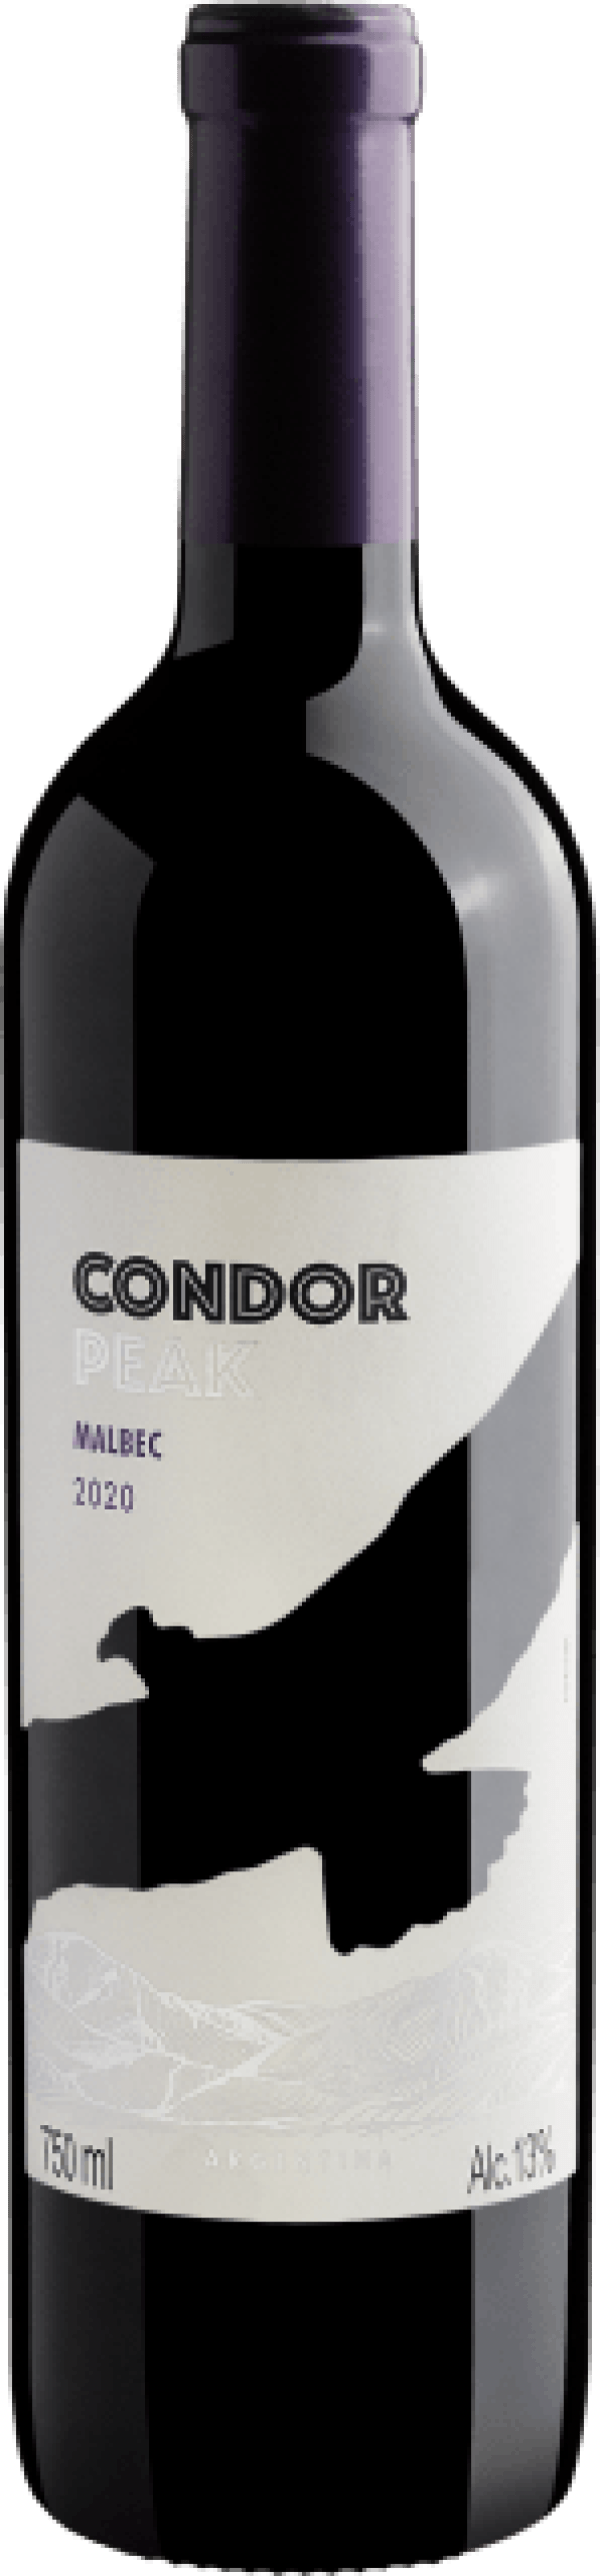 Condor Peak Malbec 2020